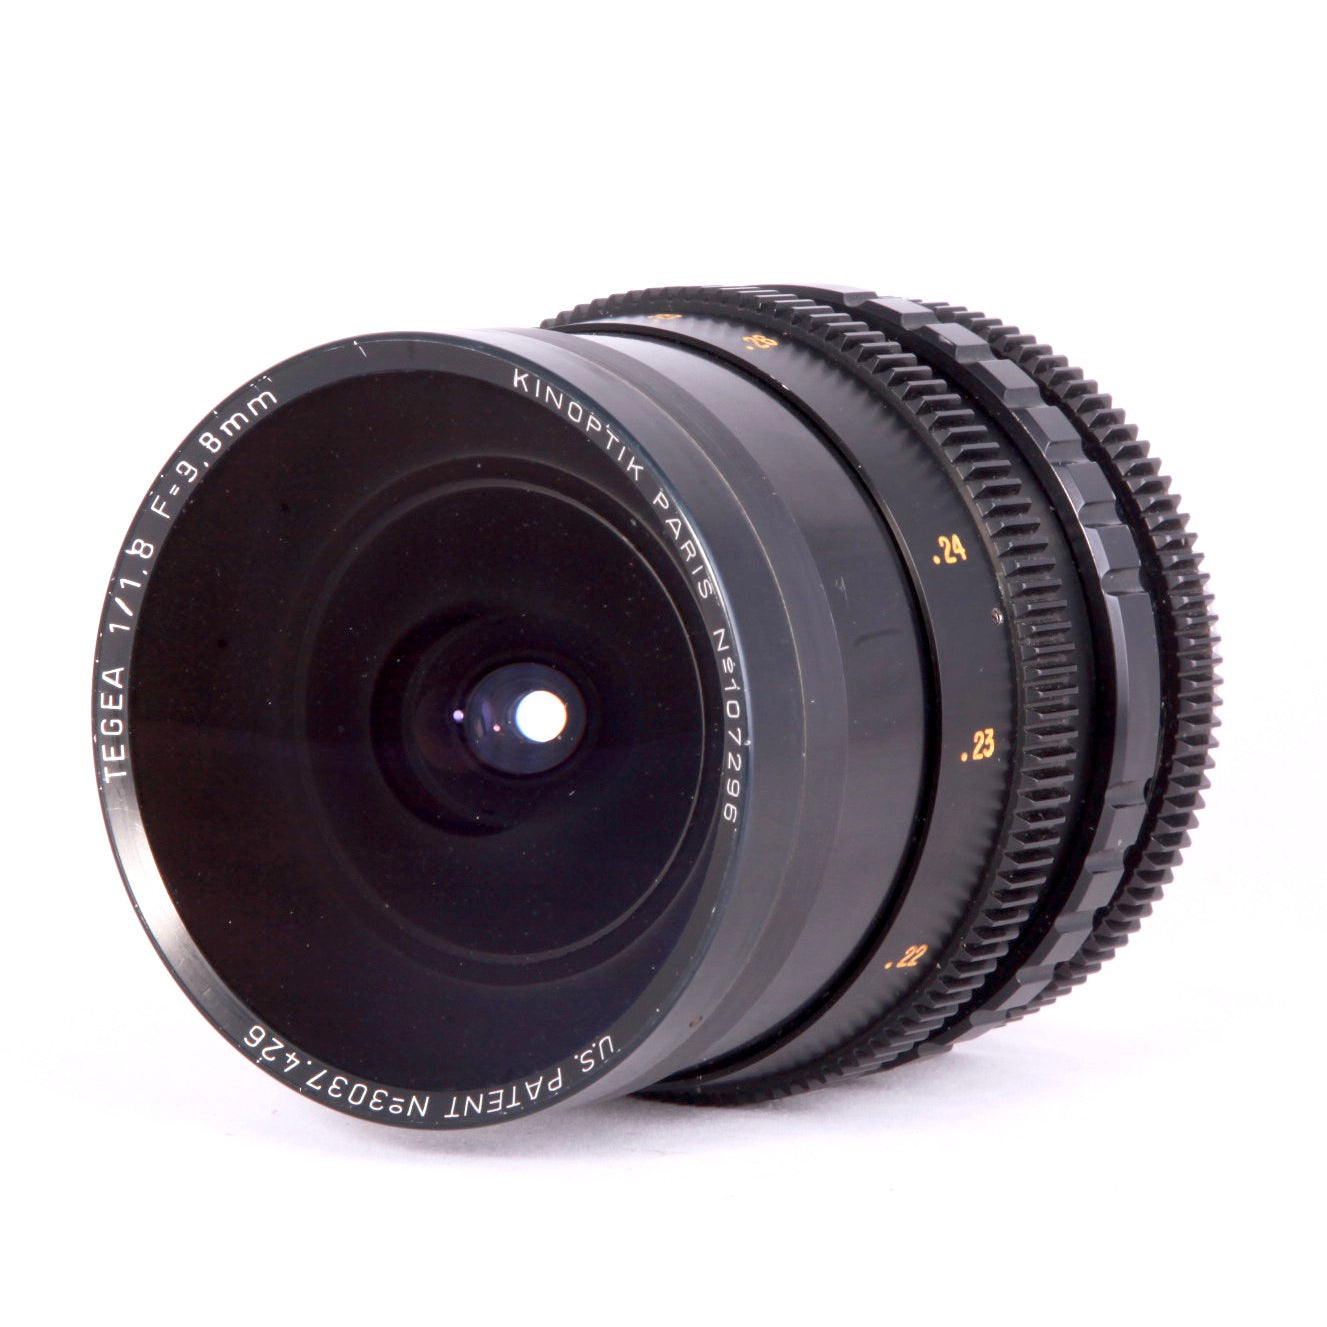 Kinoptic 9.8mm f1.8 Tegea